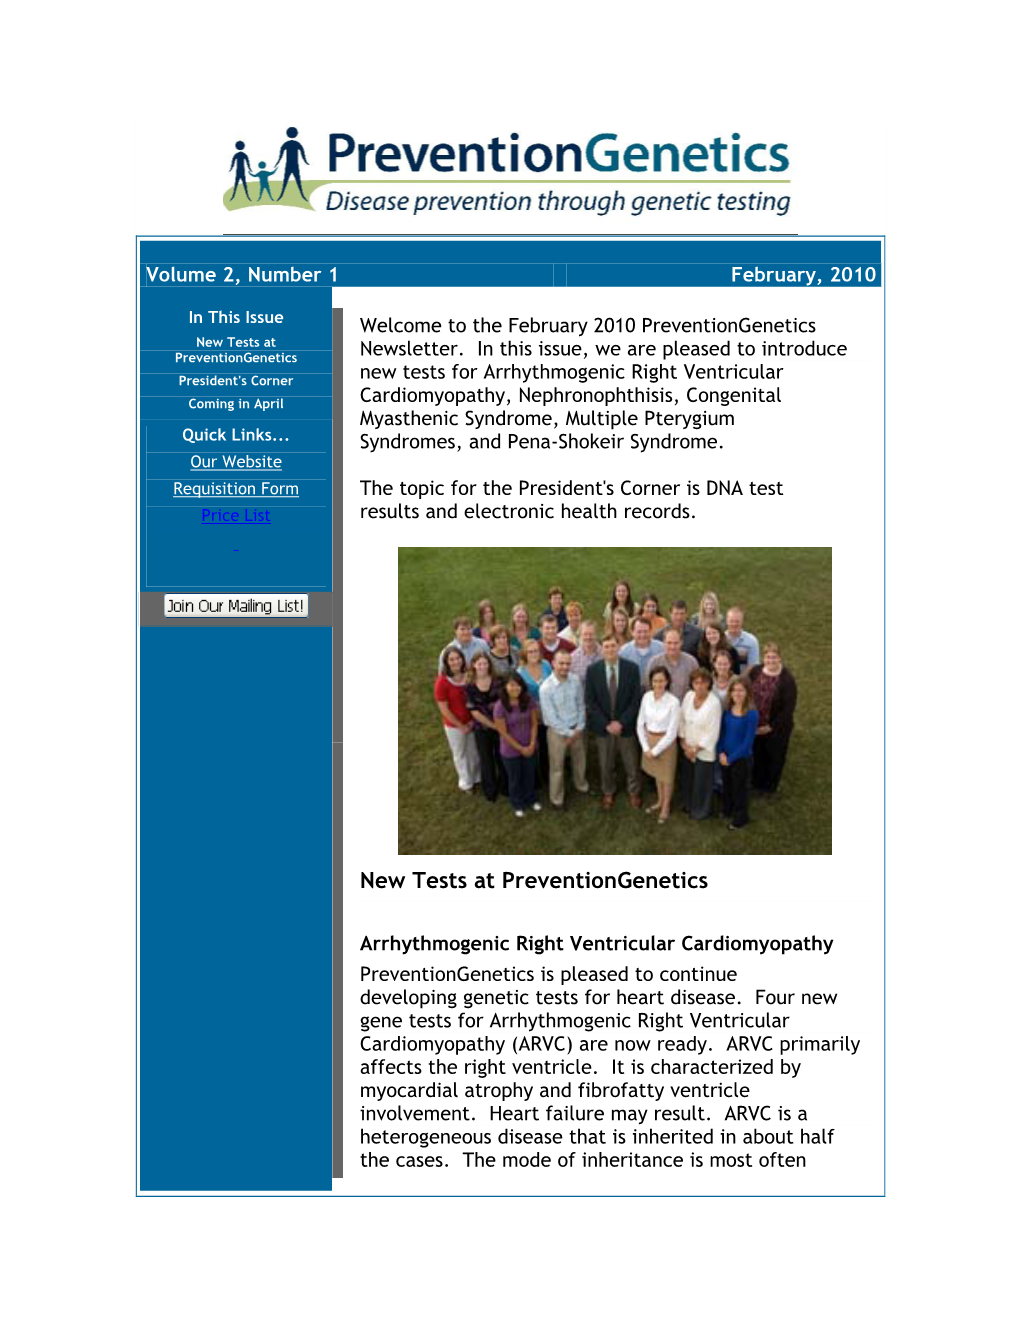 February 2010 Preventiongenetics New Tests at Preventiongenetics Newsletter